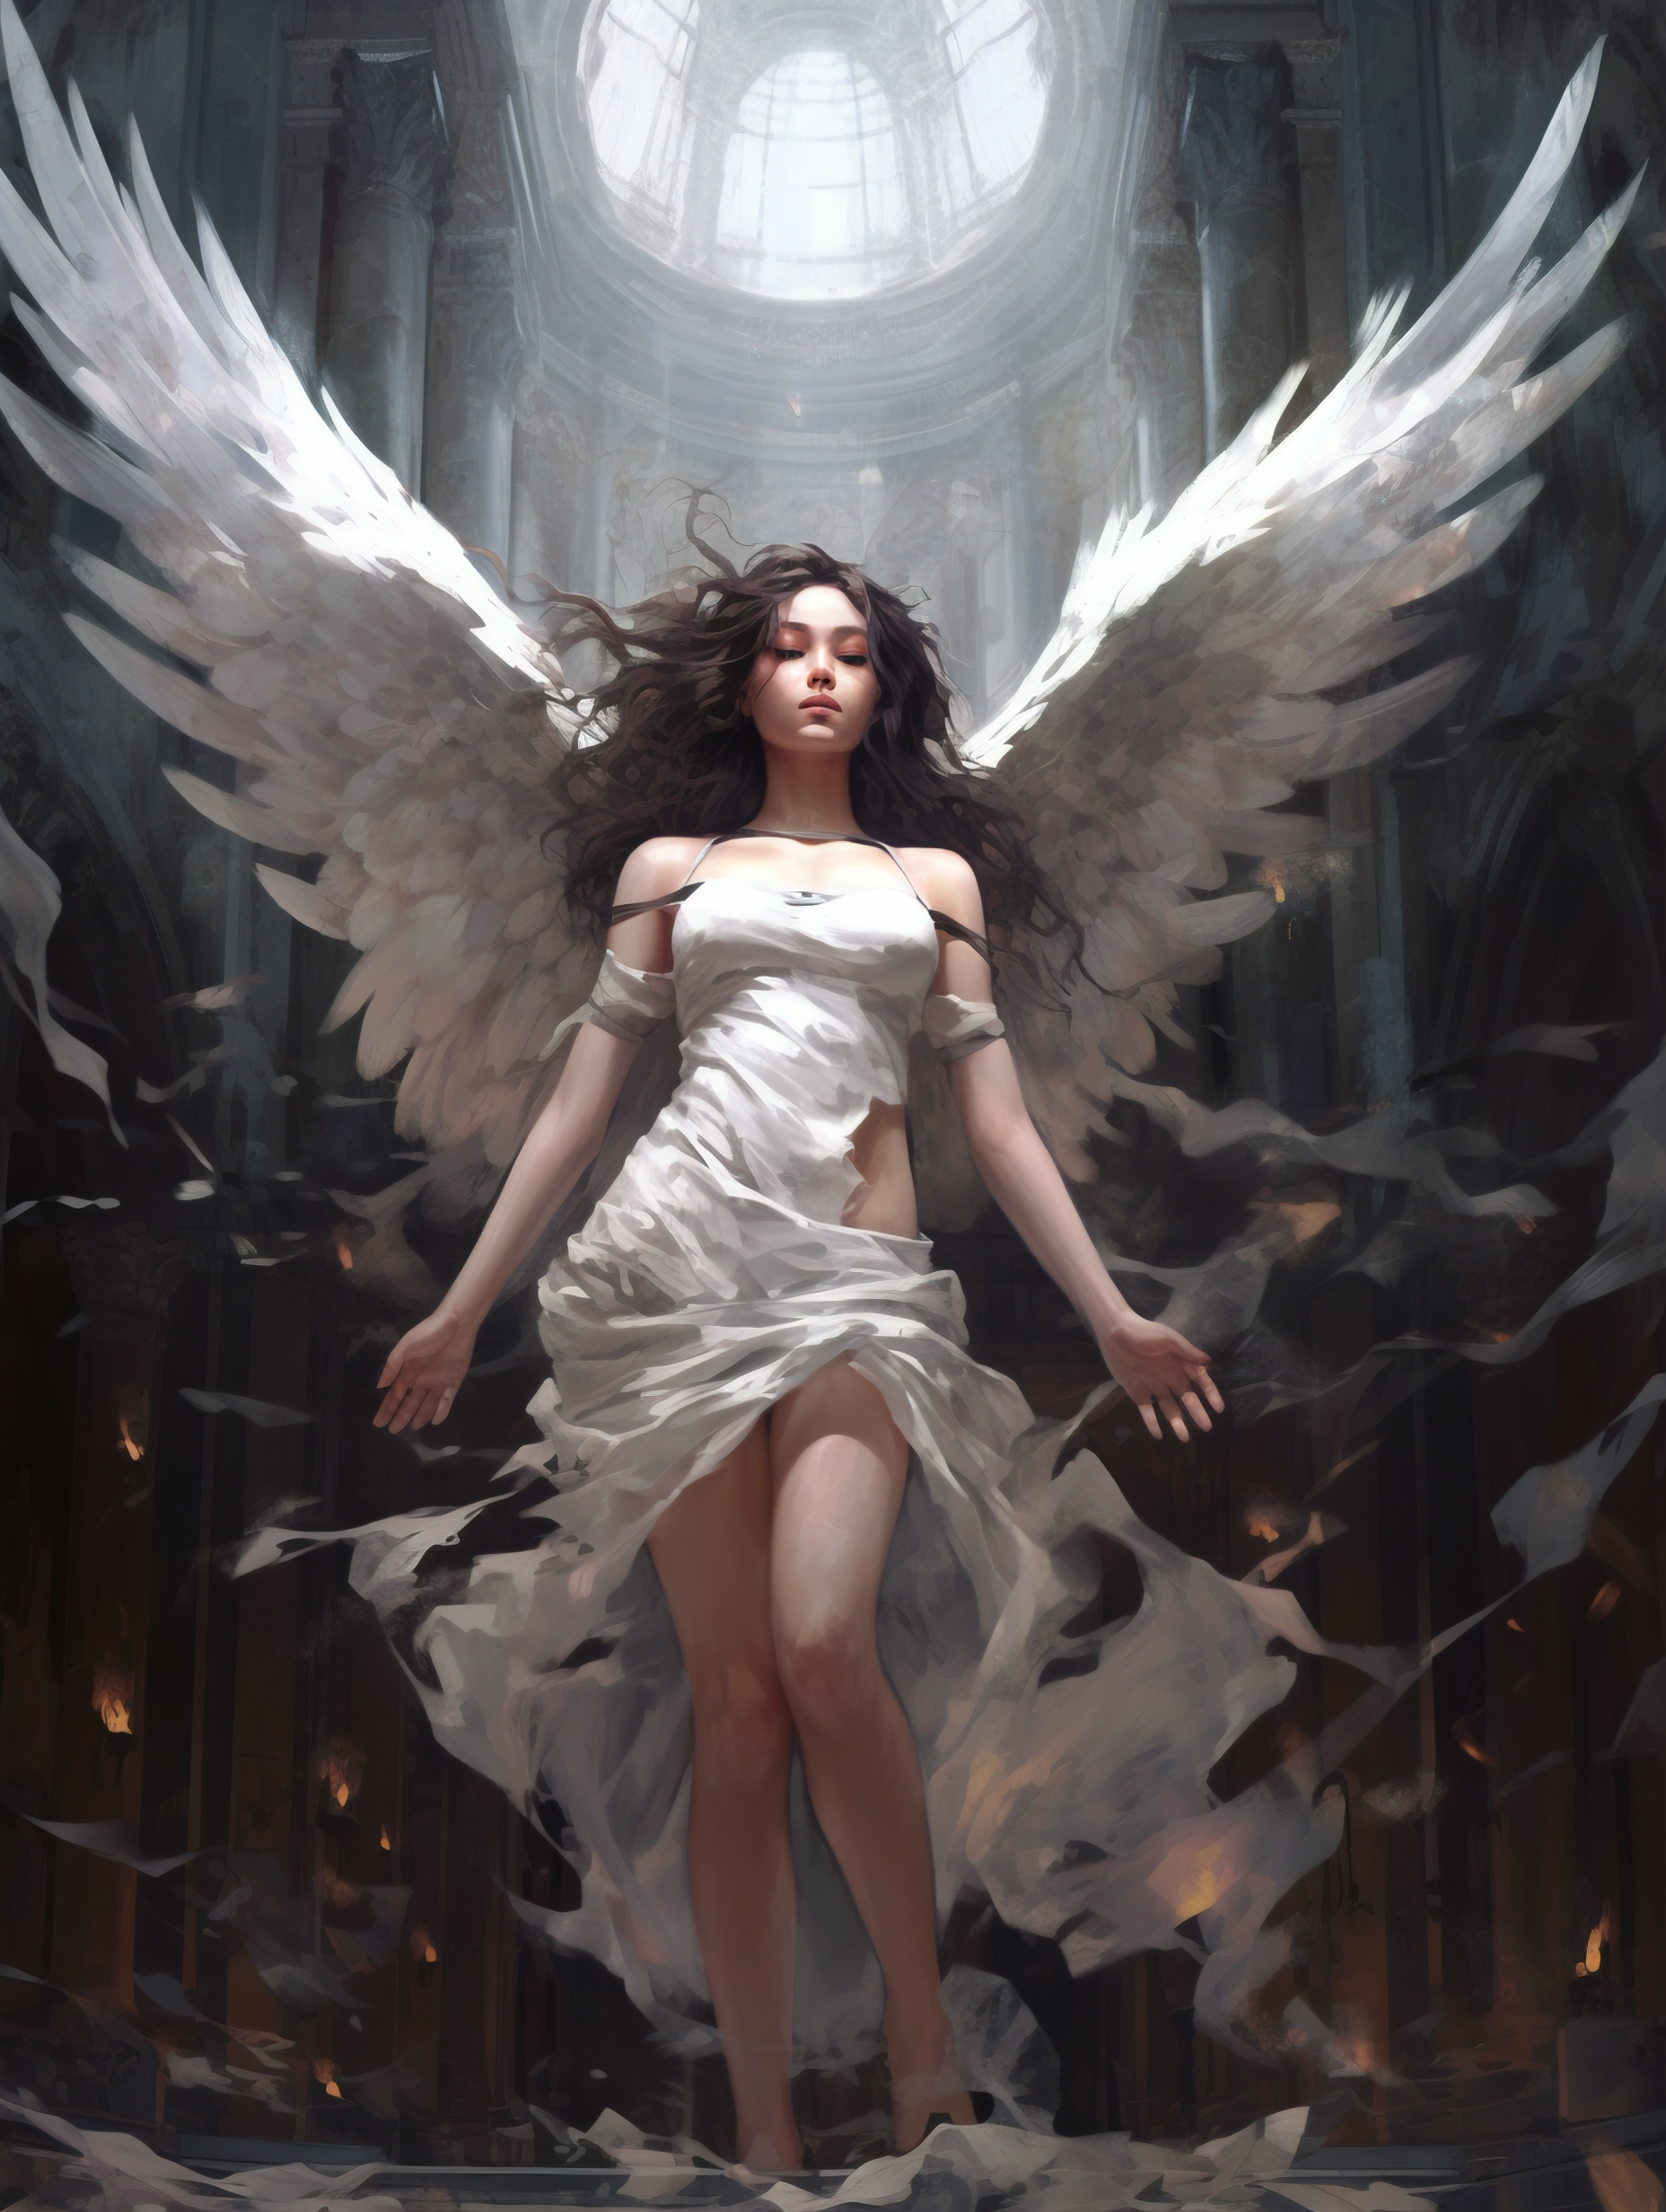 General 1856x2464 wings white dress black hair angel bare shoulders AI art dress looking at viewer long hair angel wings portrait display indoors